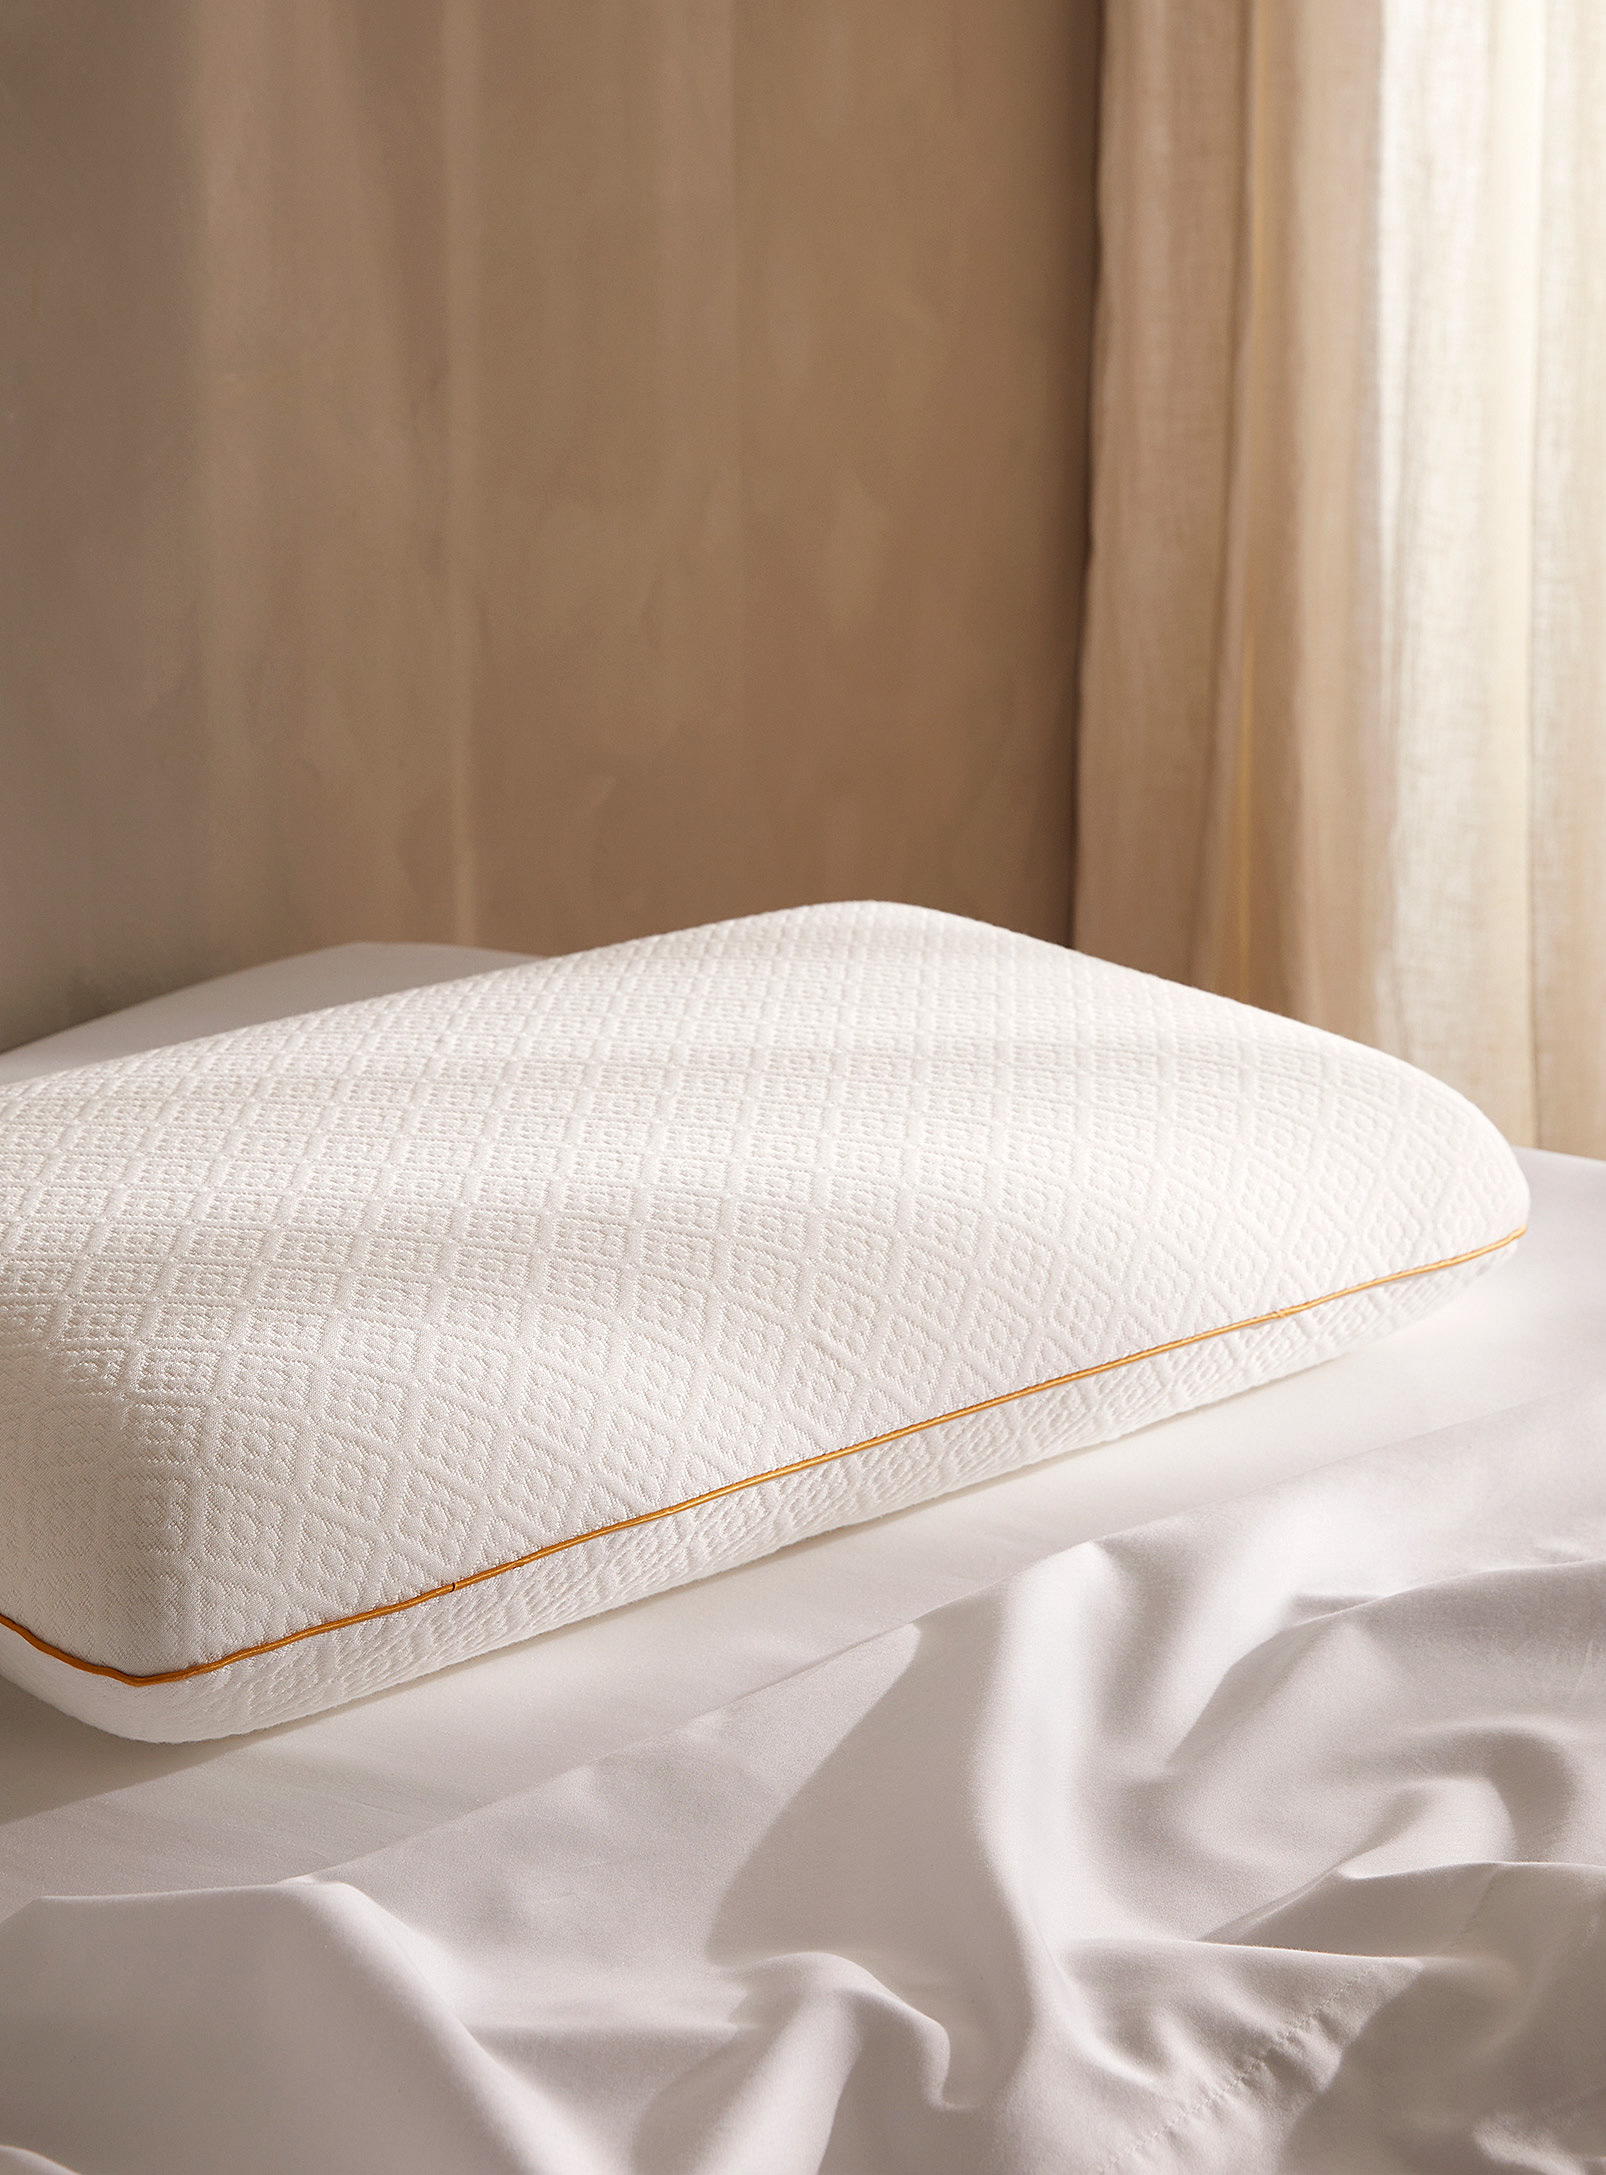 Simons Maison - Soft memory foam pillow Semi-firm support Queen size